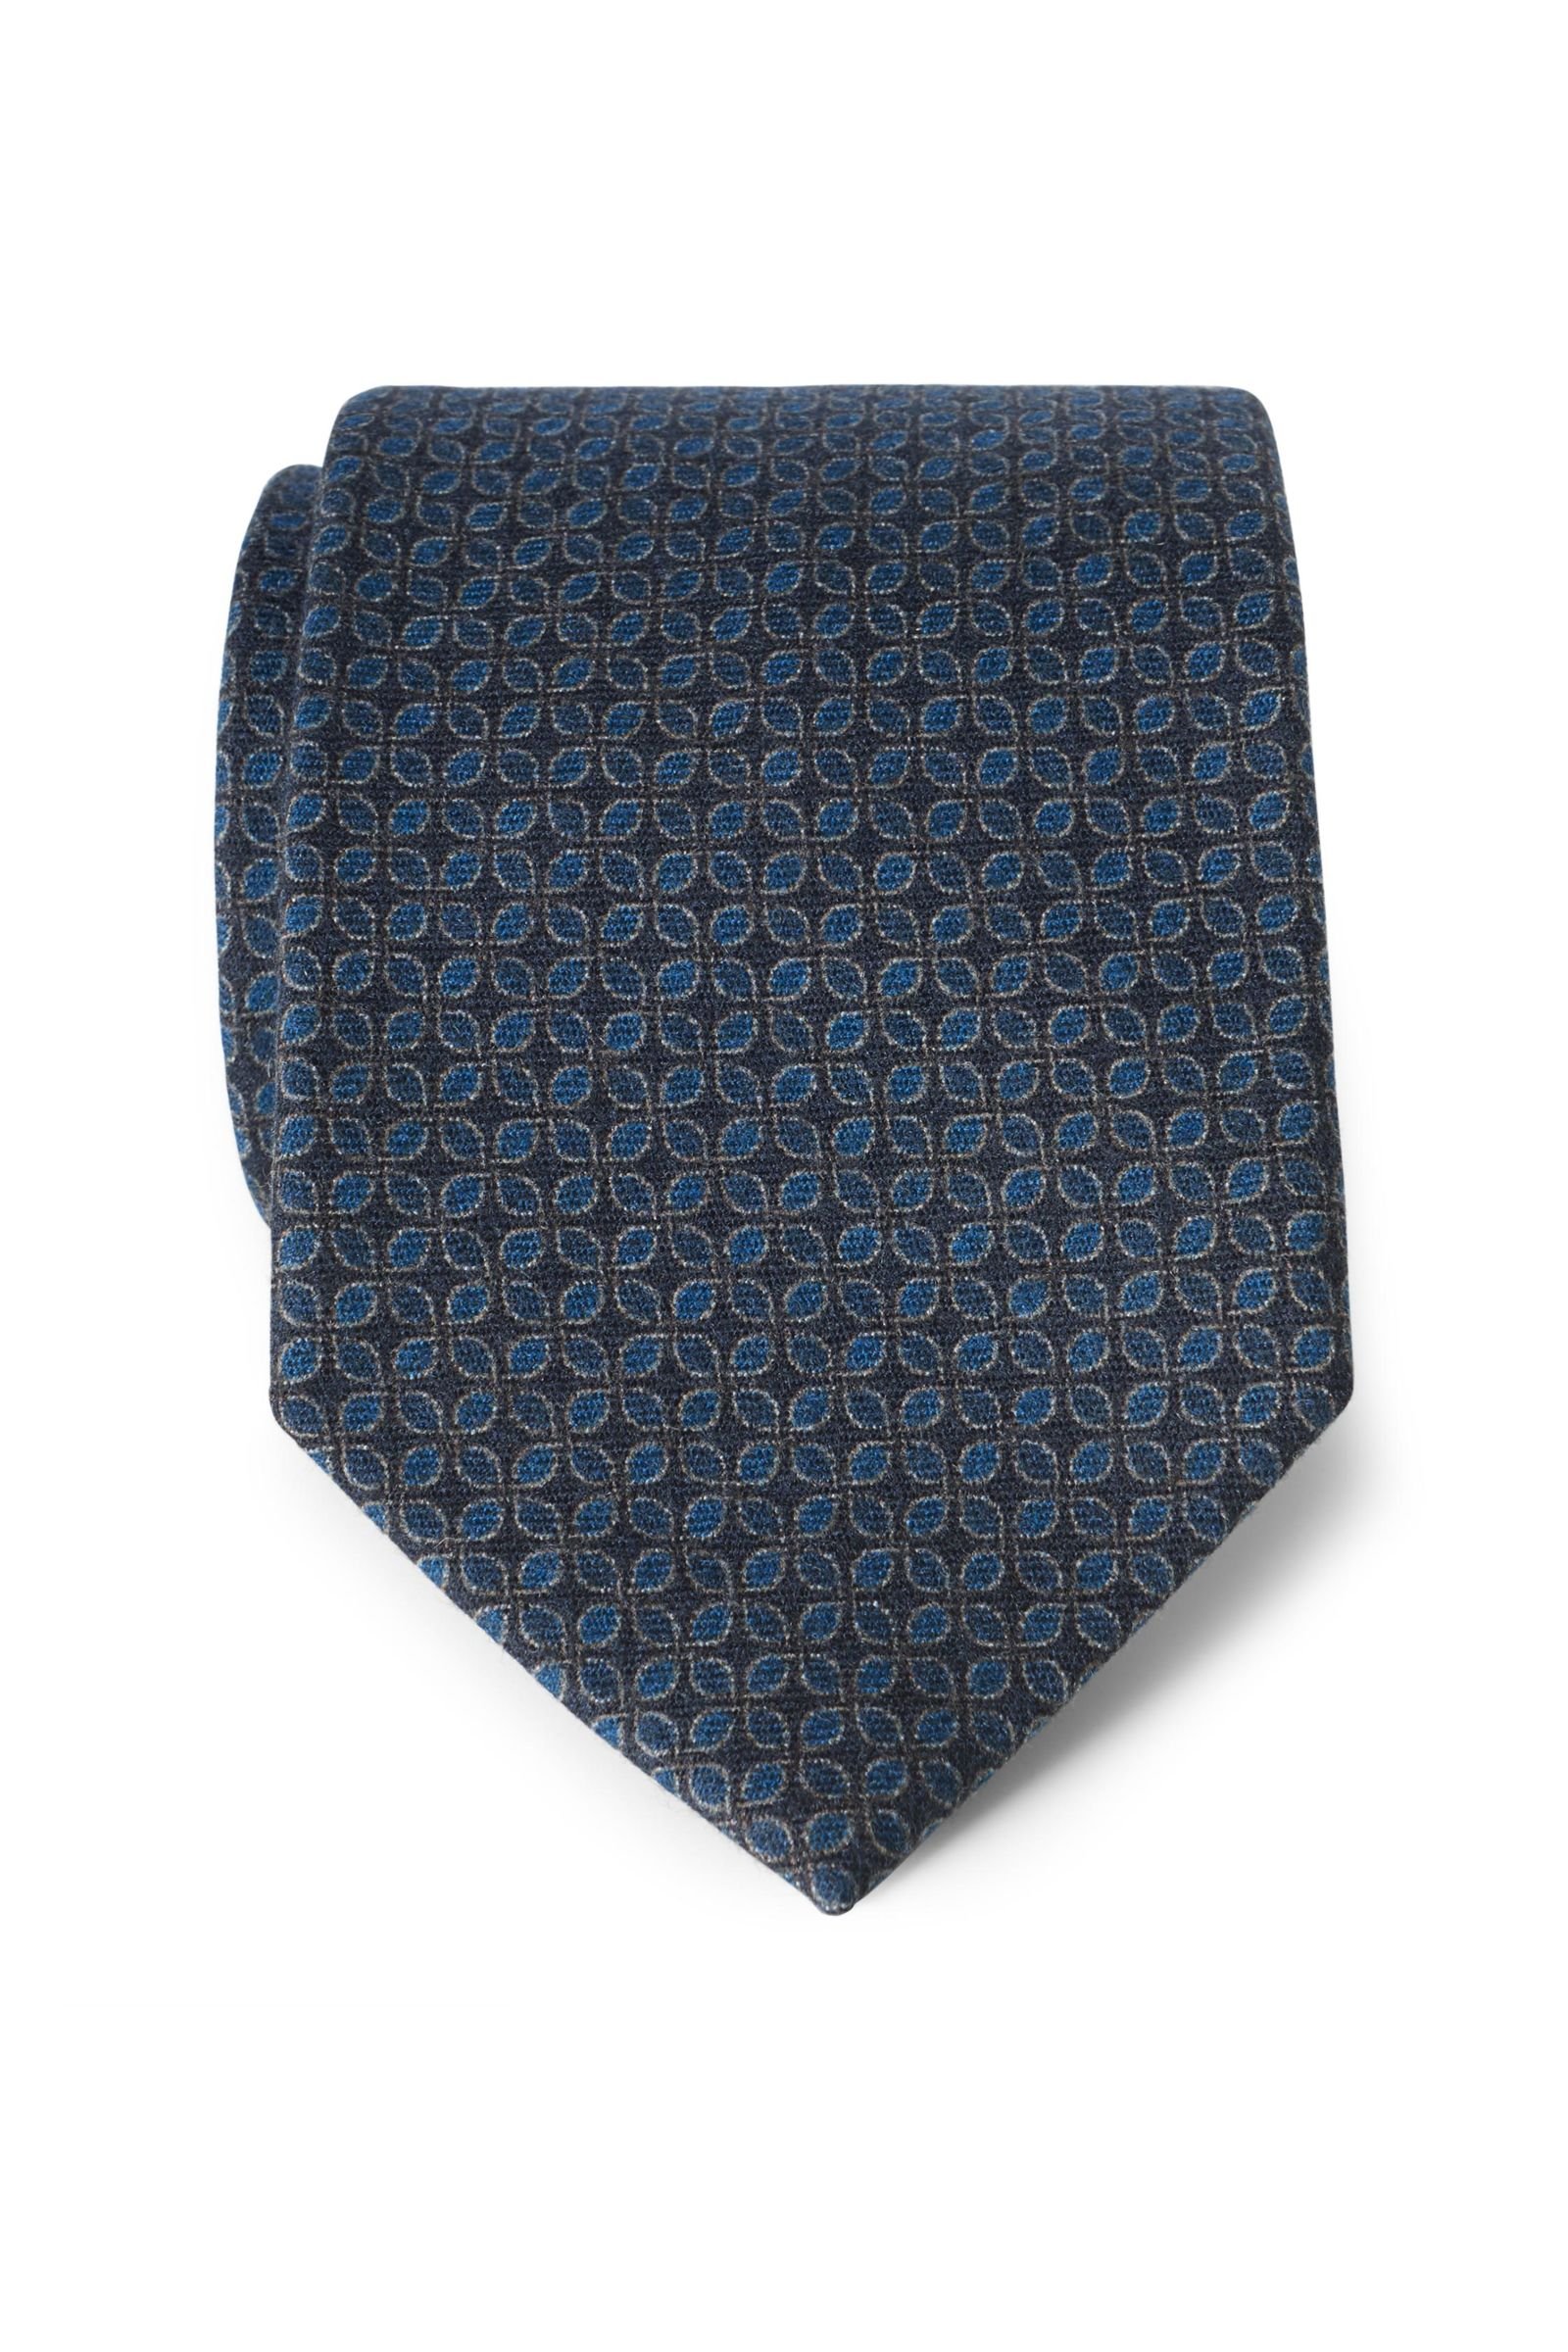 Wool tie teal patterned